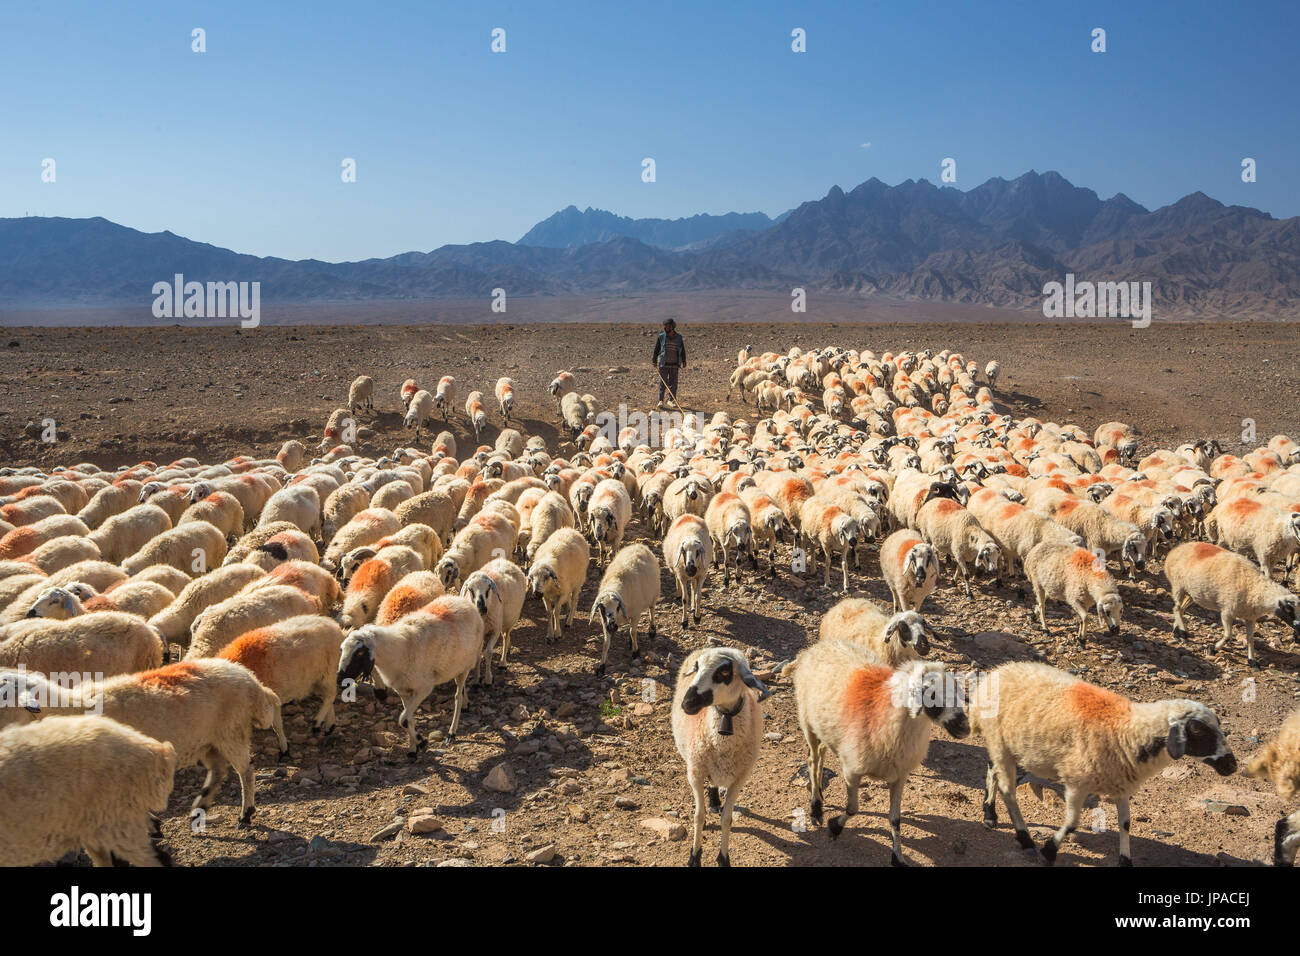 Iran, Near Abyaneh City, Herd Stock Photo